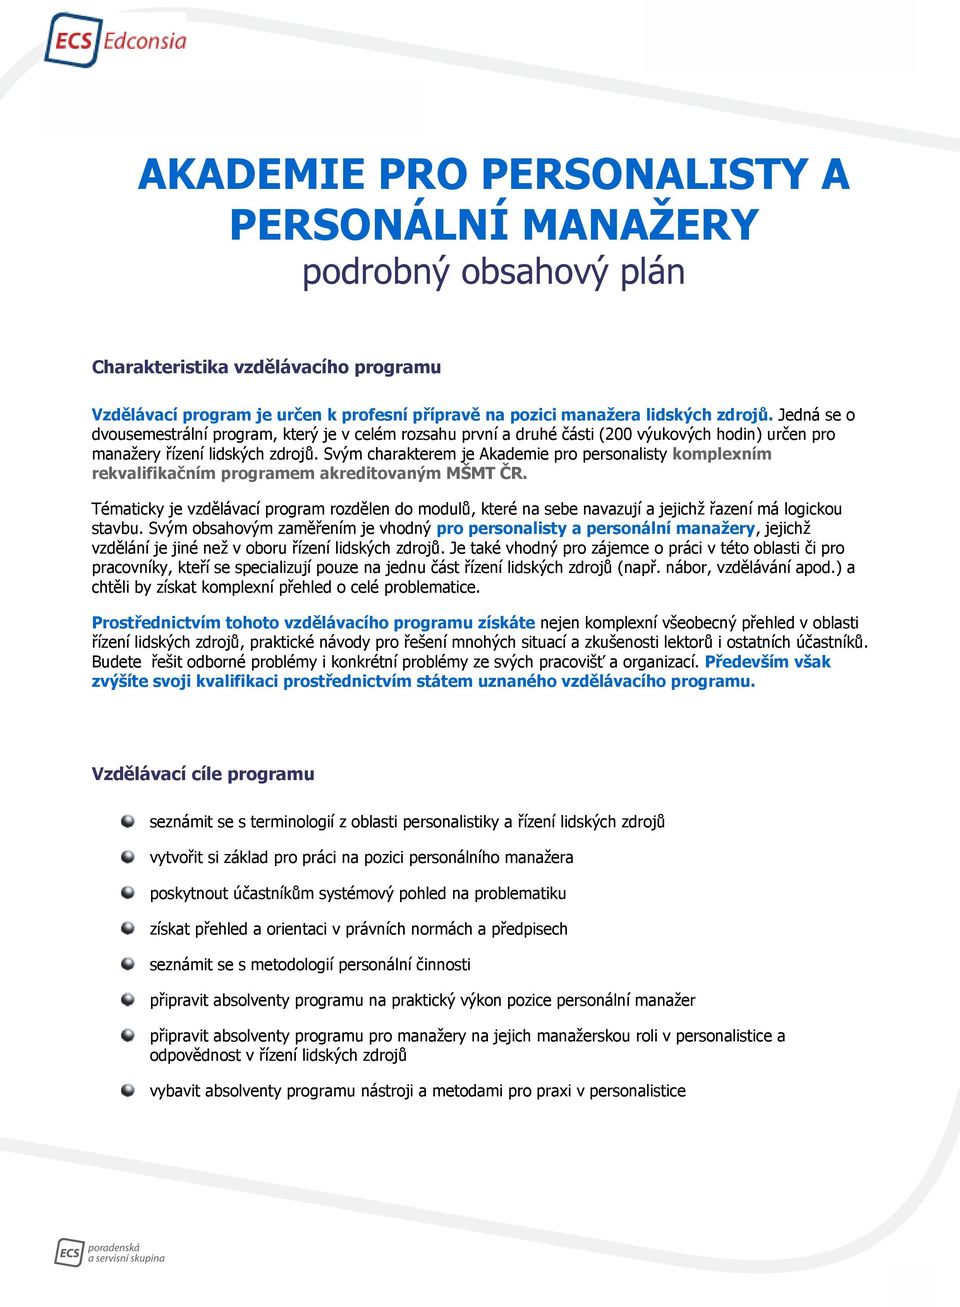 Svým charakterem je Akademie pro personalisty komplexním rekvalifikačním programem akreditovaným MŠMT ČR.